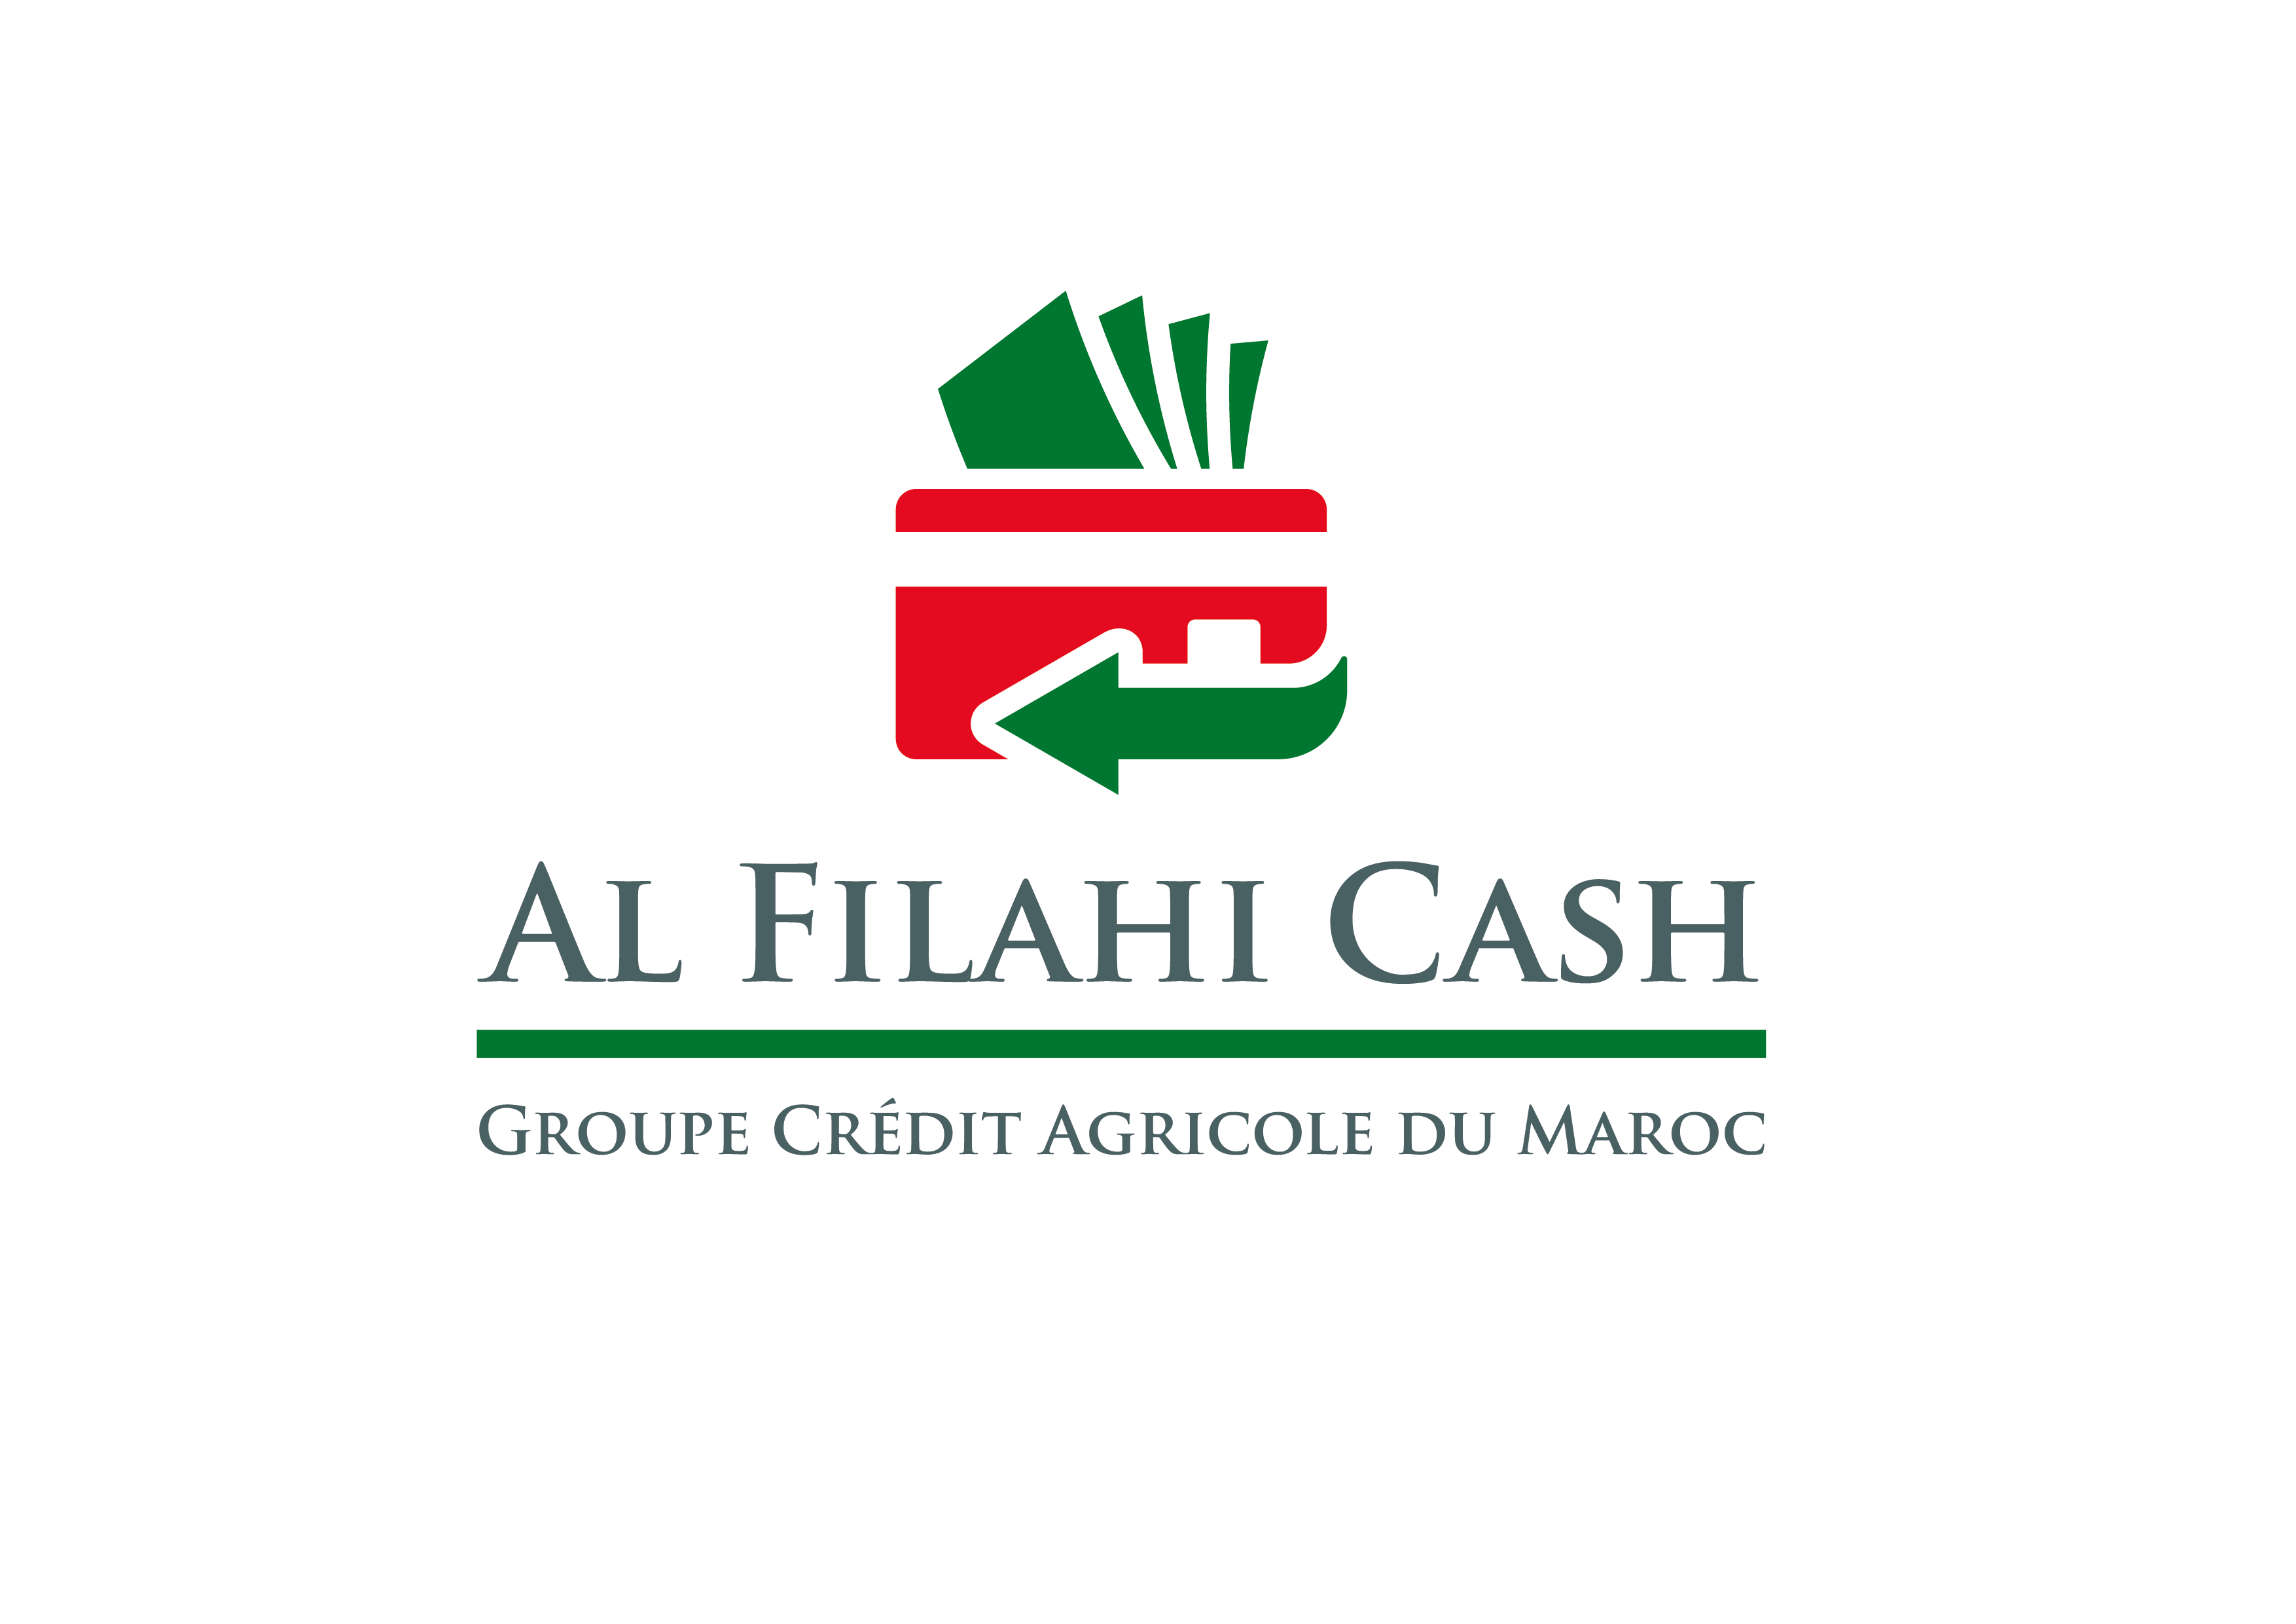 AL FILAHI CASH : Le Crédit Agricole du Maroc lance sa filiale de paiement